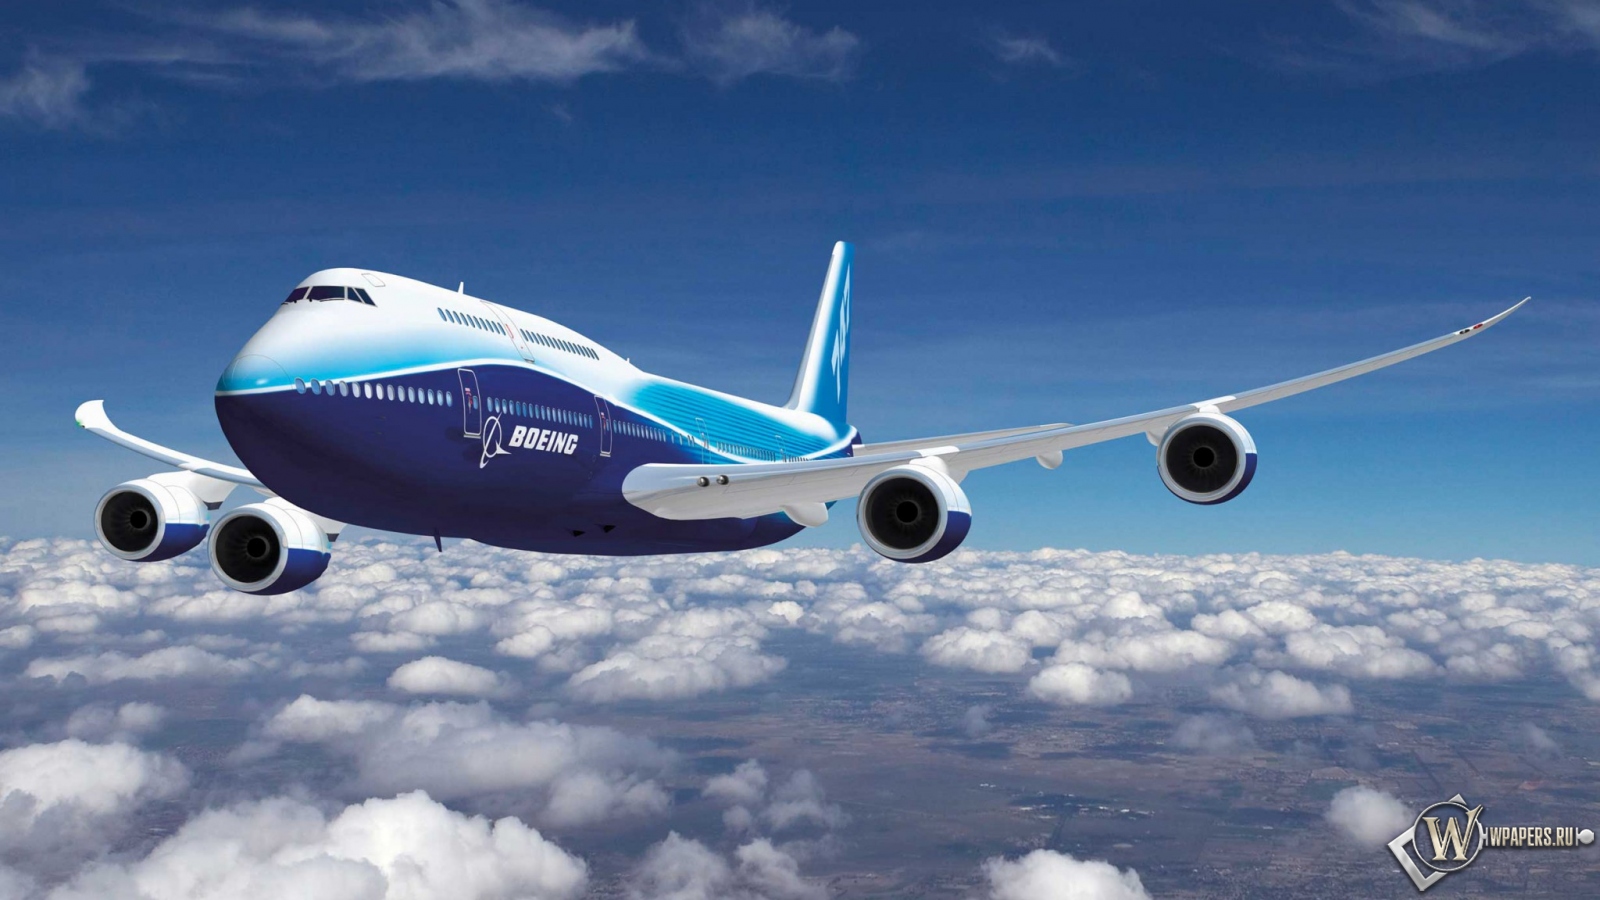 Boeing-747 1600x900